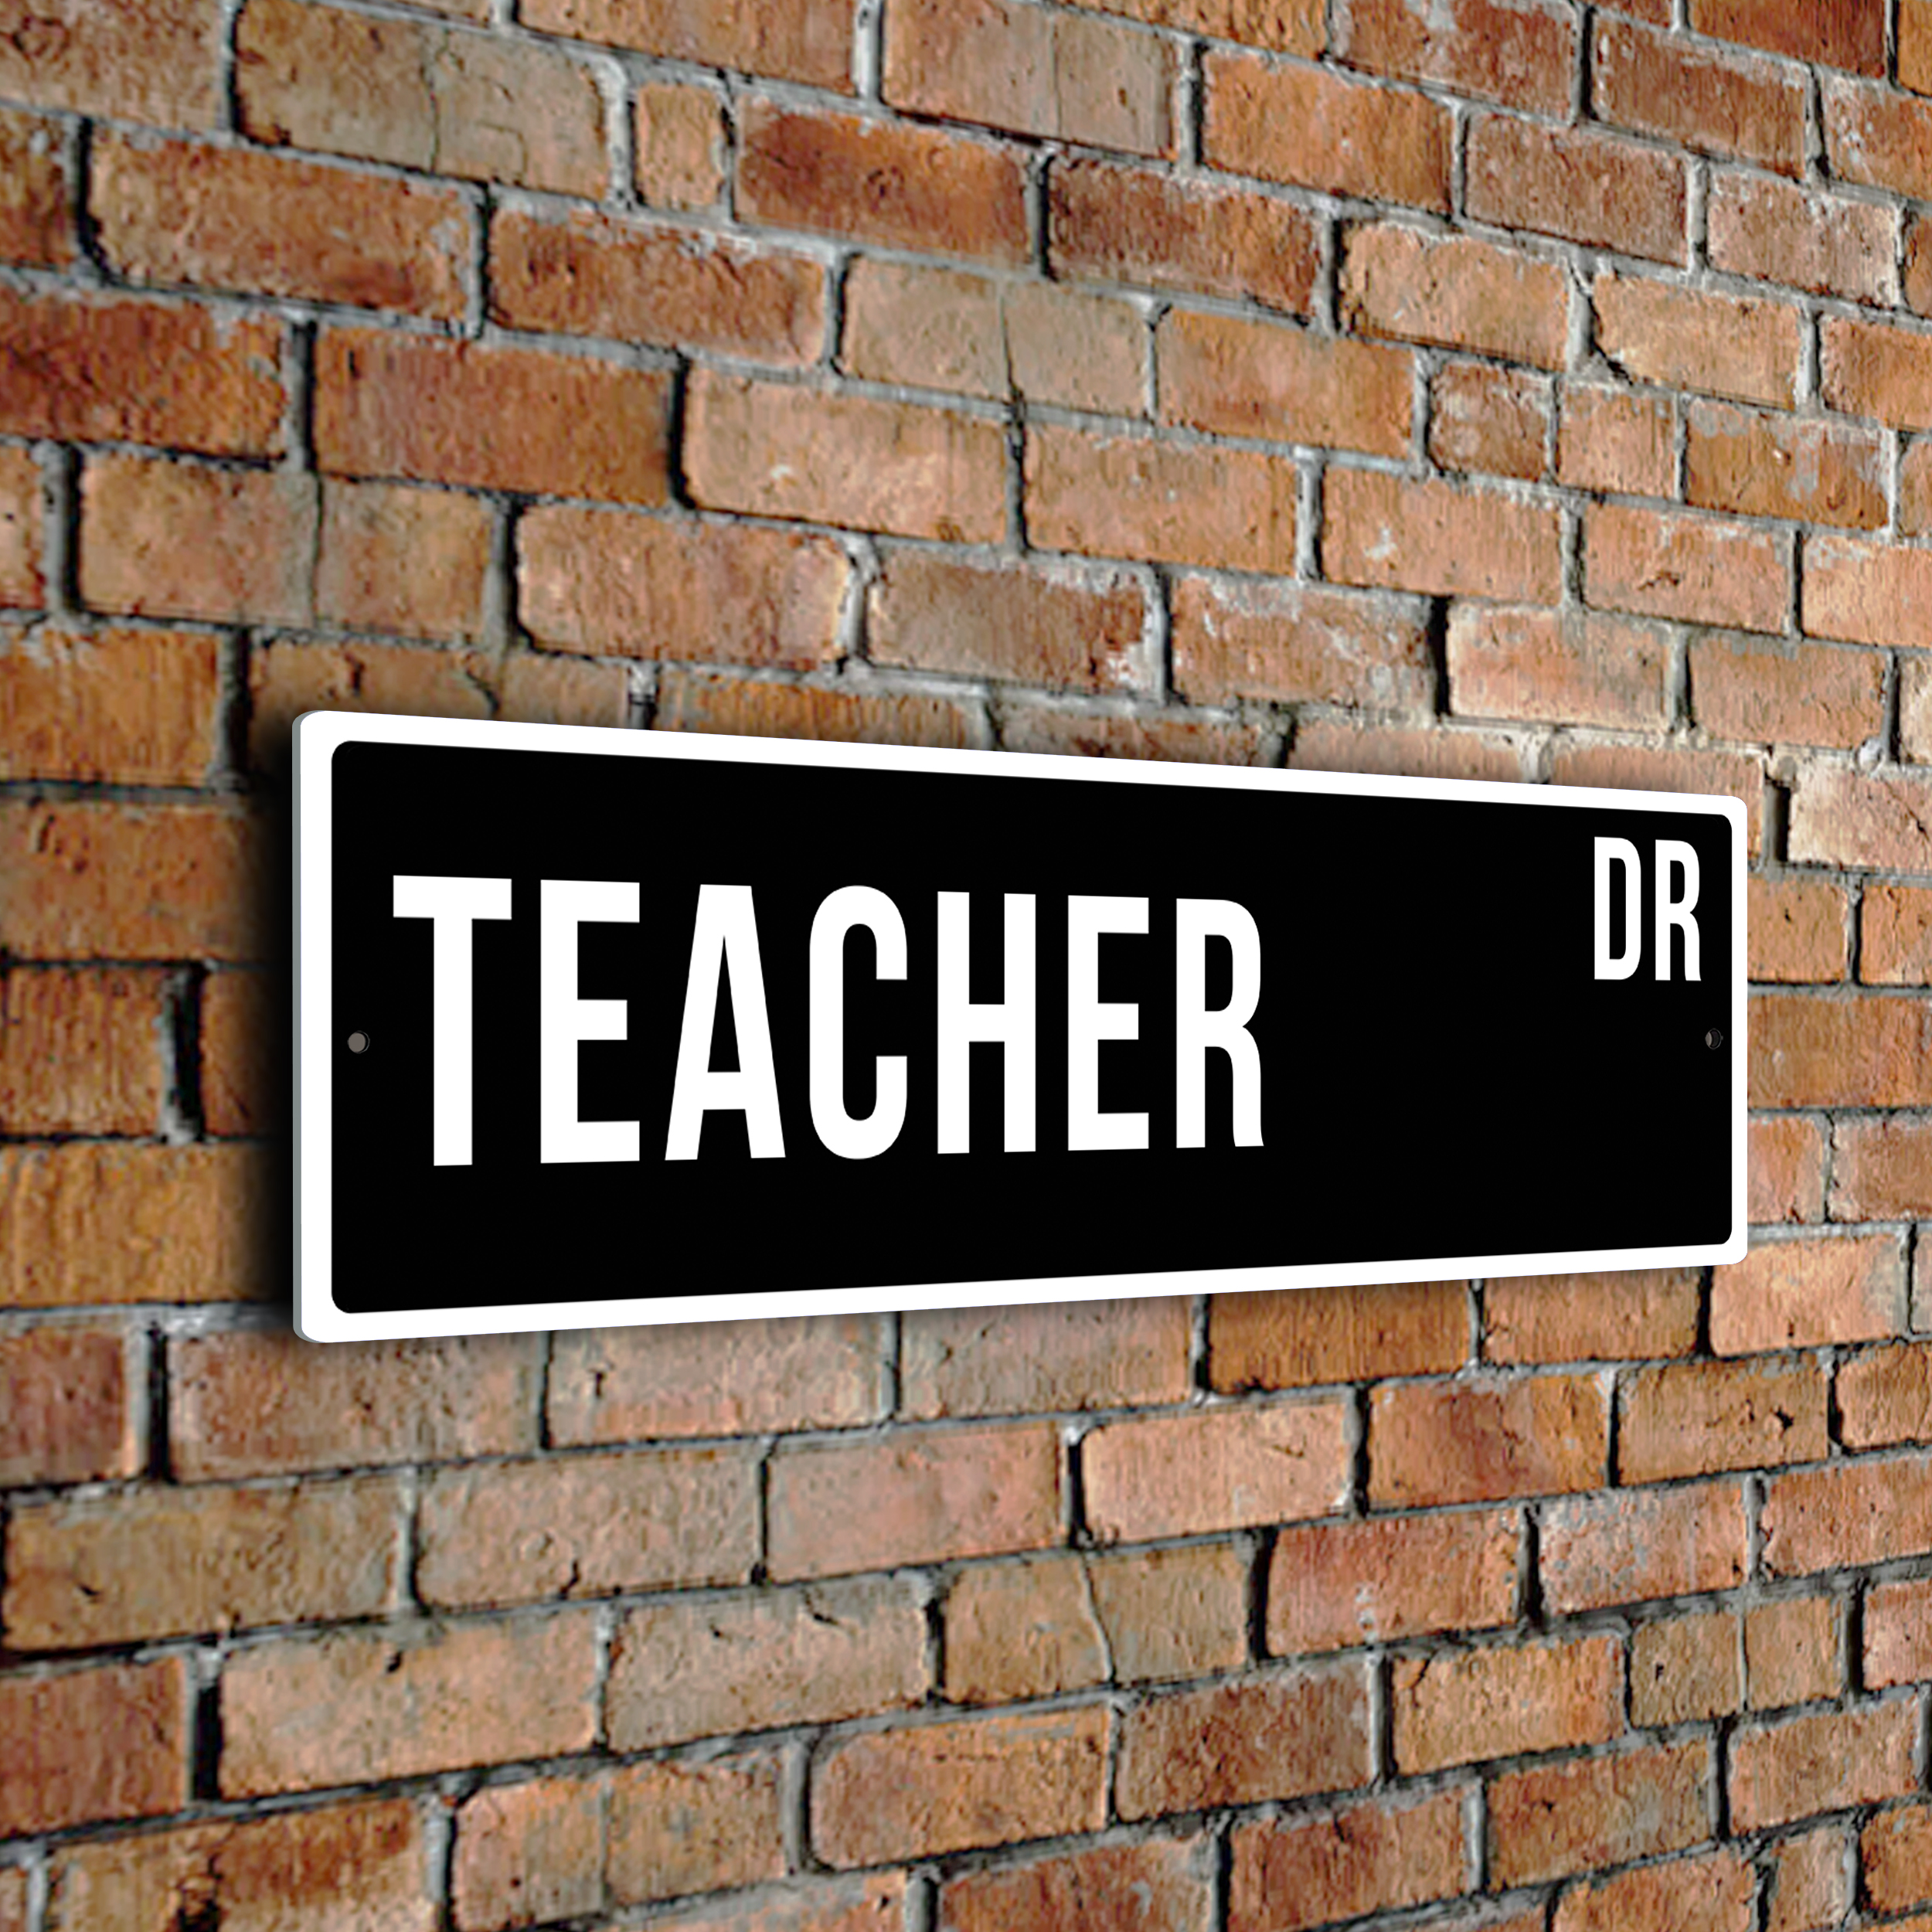 Teacher street sign